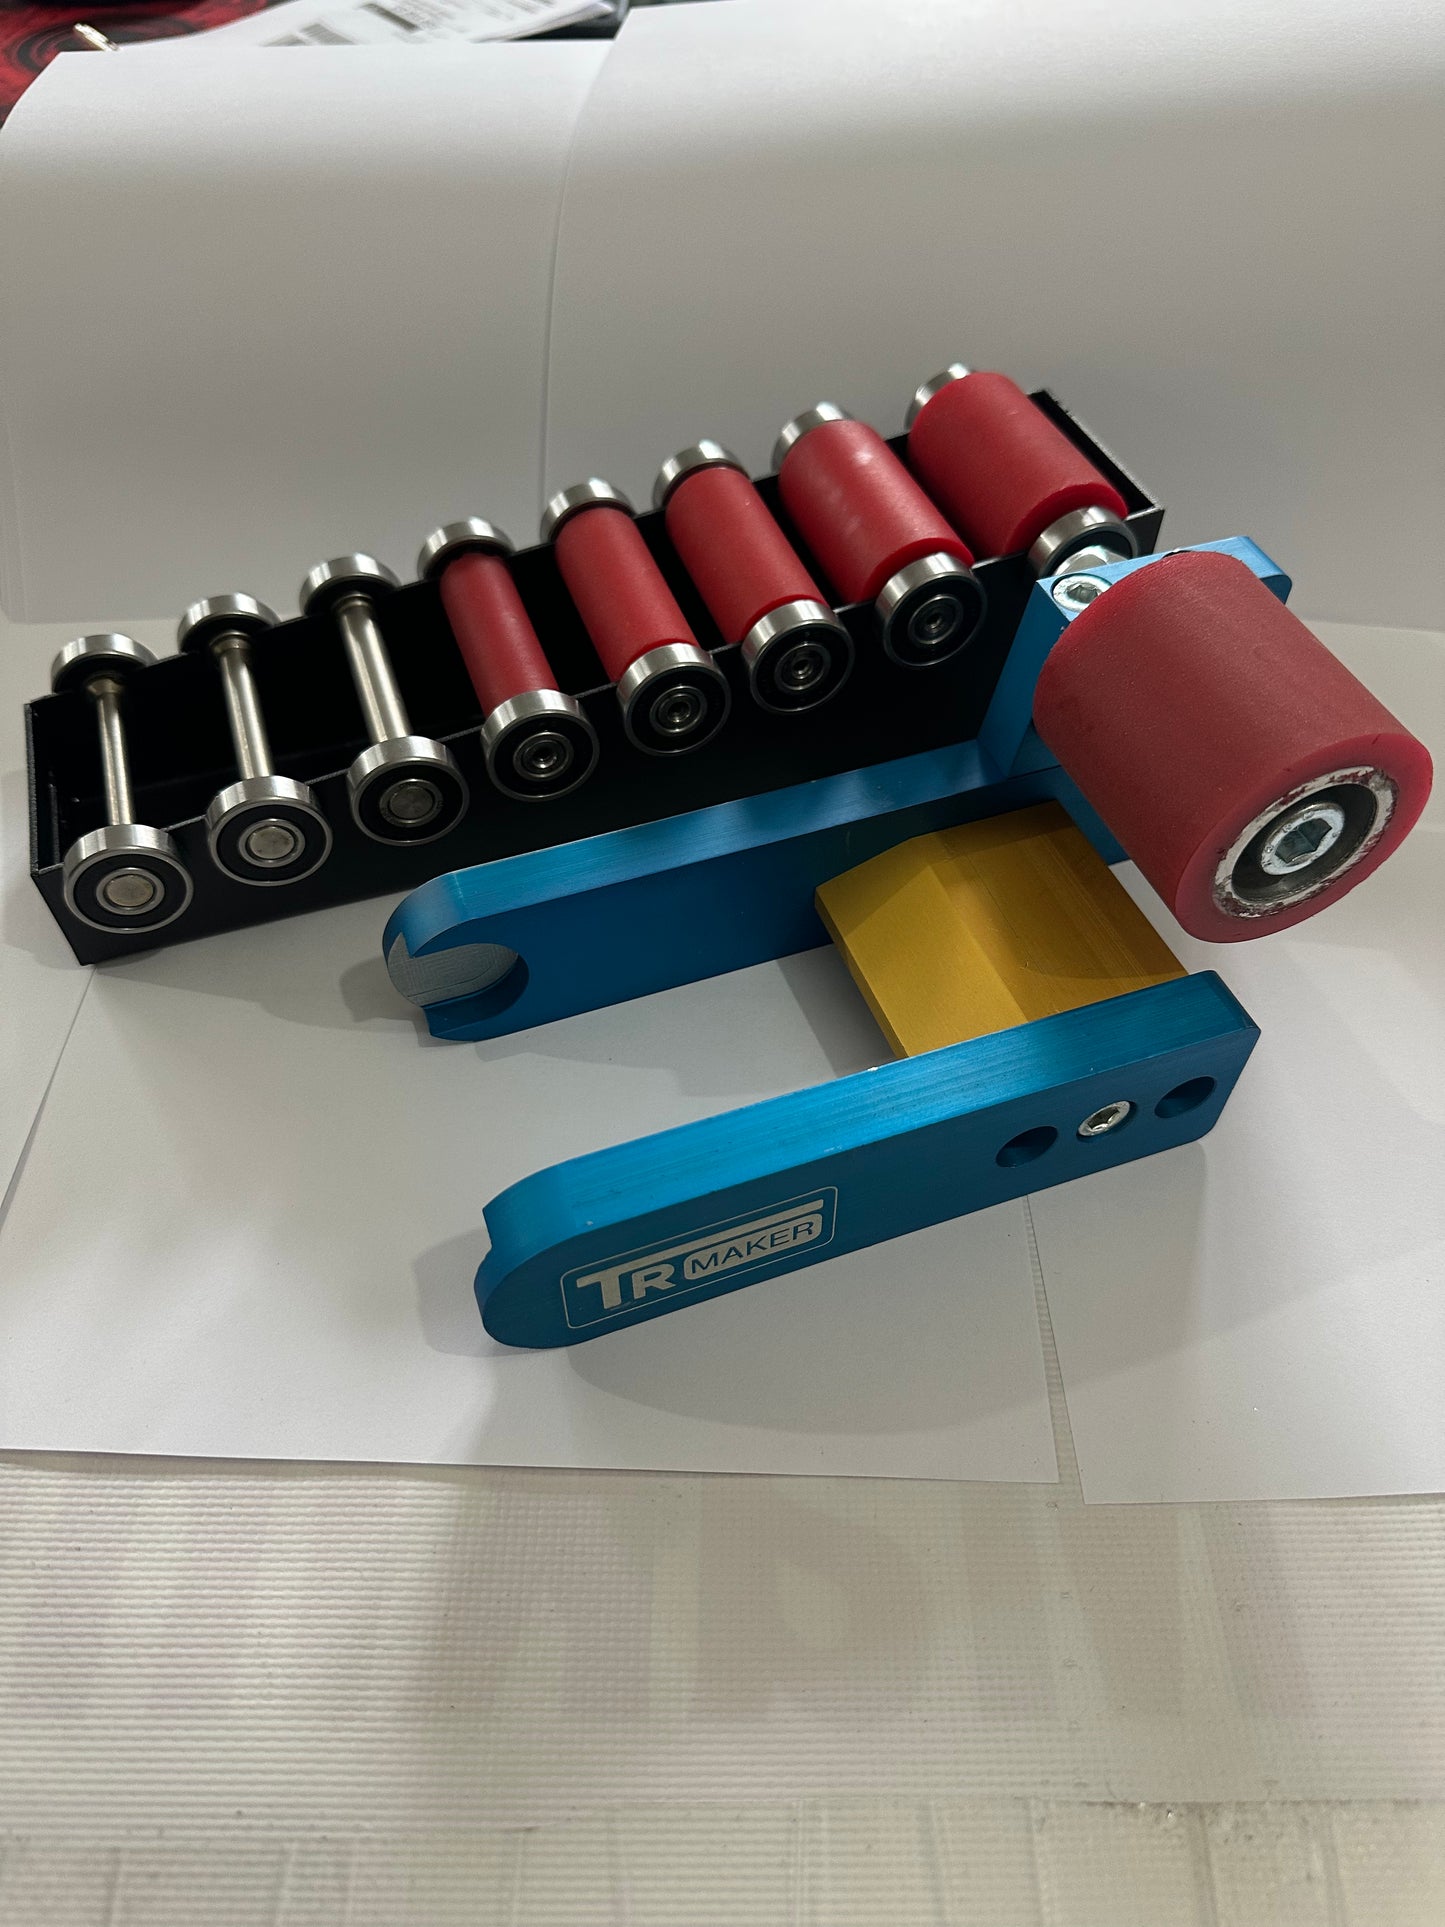 TR Maker Belt Grinder 2x72 small wheel & holder for  grinders 1big rubber whell 8 wheel kit